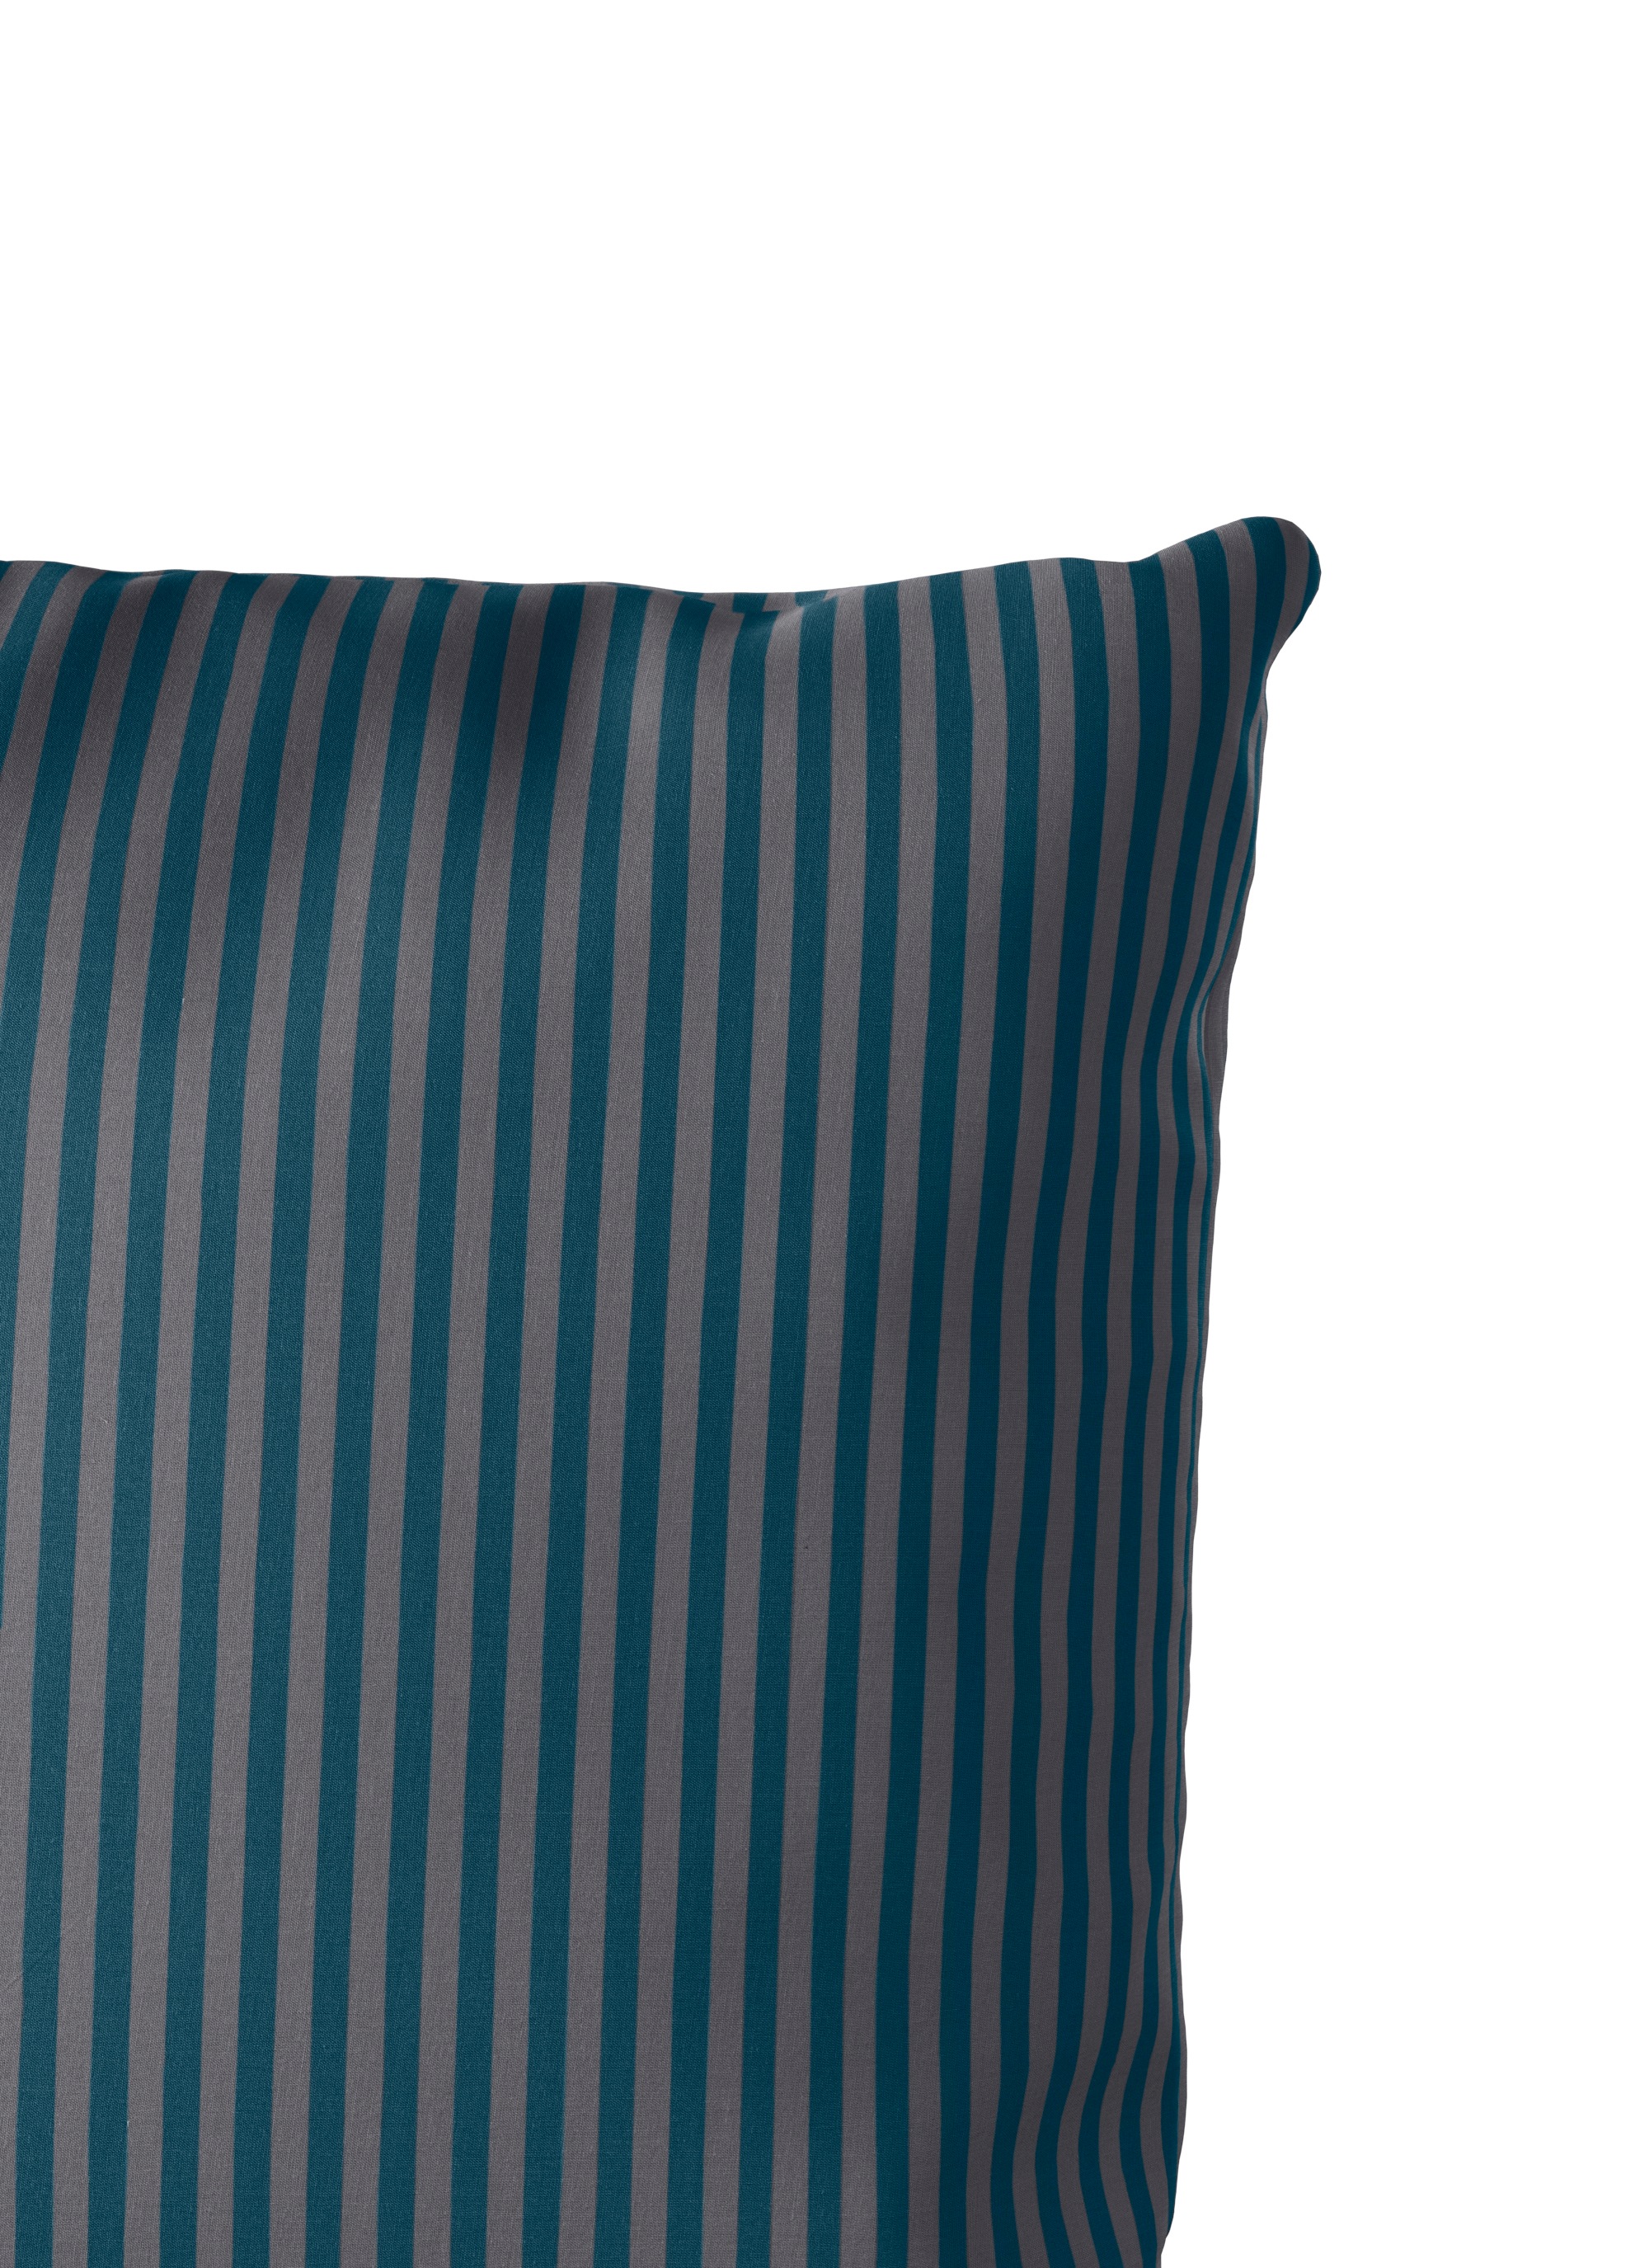 Bruno Banani Bettwäsche »Jassen in Gr. 135x200 oder 155x220 cm«, (3 tlg.), moderne Bettwäsche aus Baumwolle, Bettwäsche mit Streifen-Design